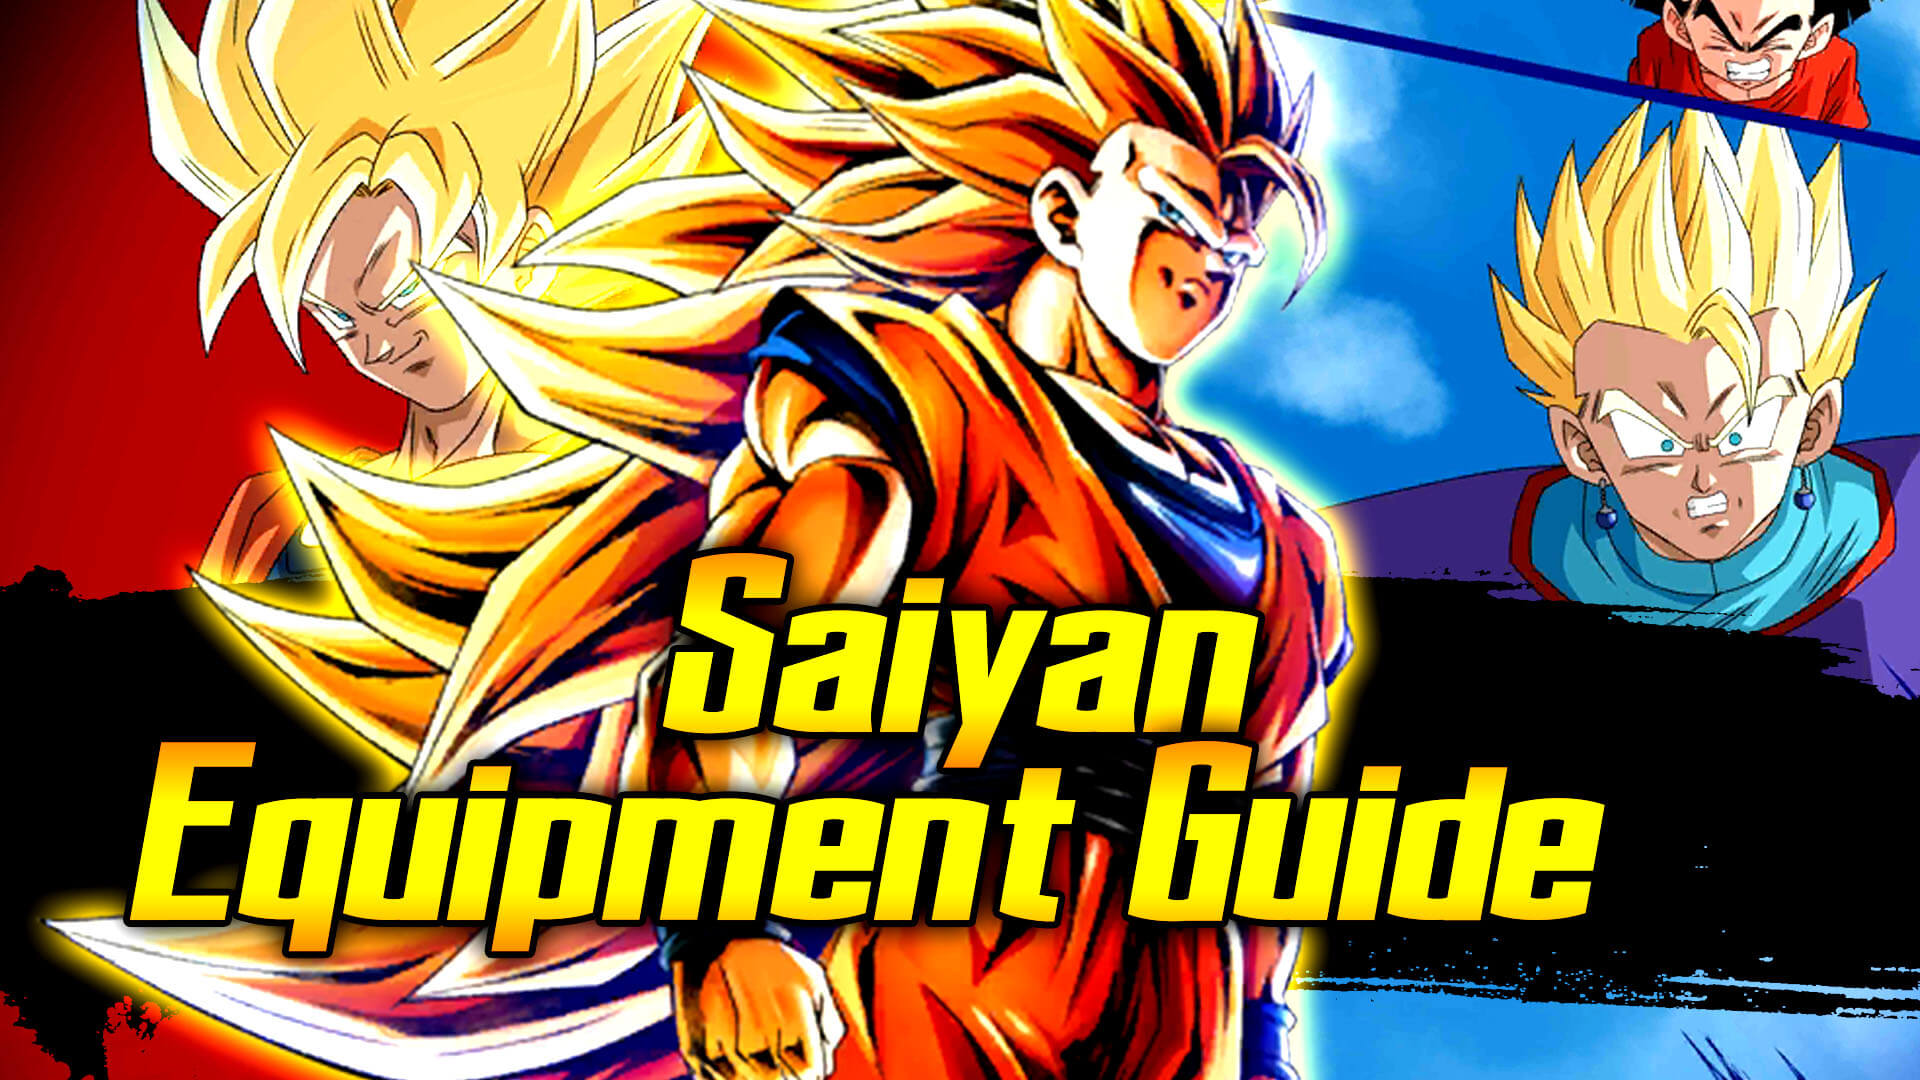 Saiyan Team Equipment Guide